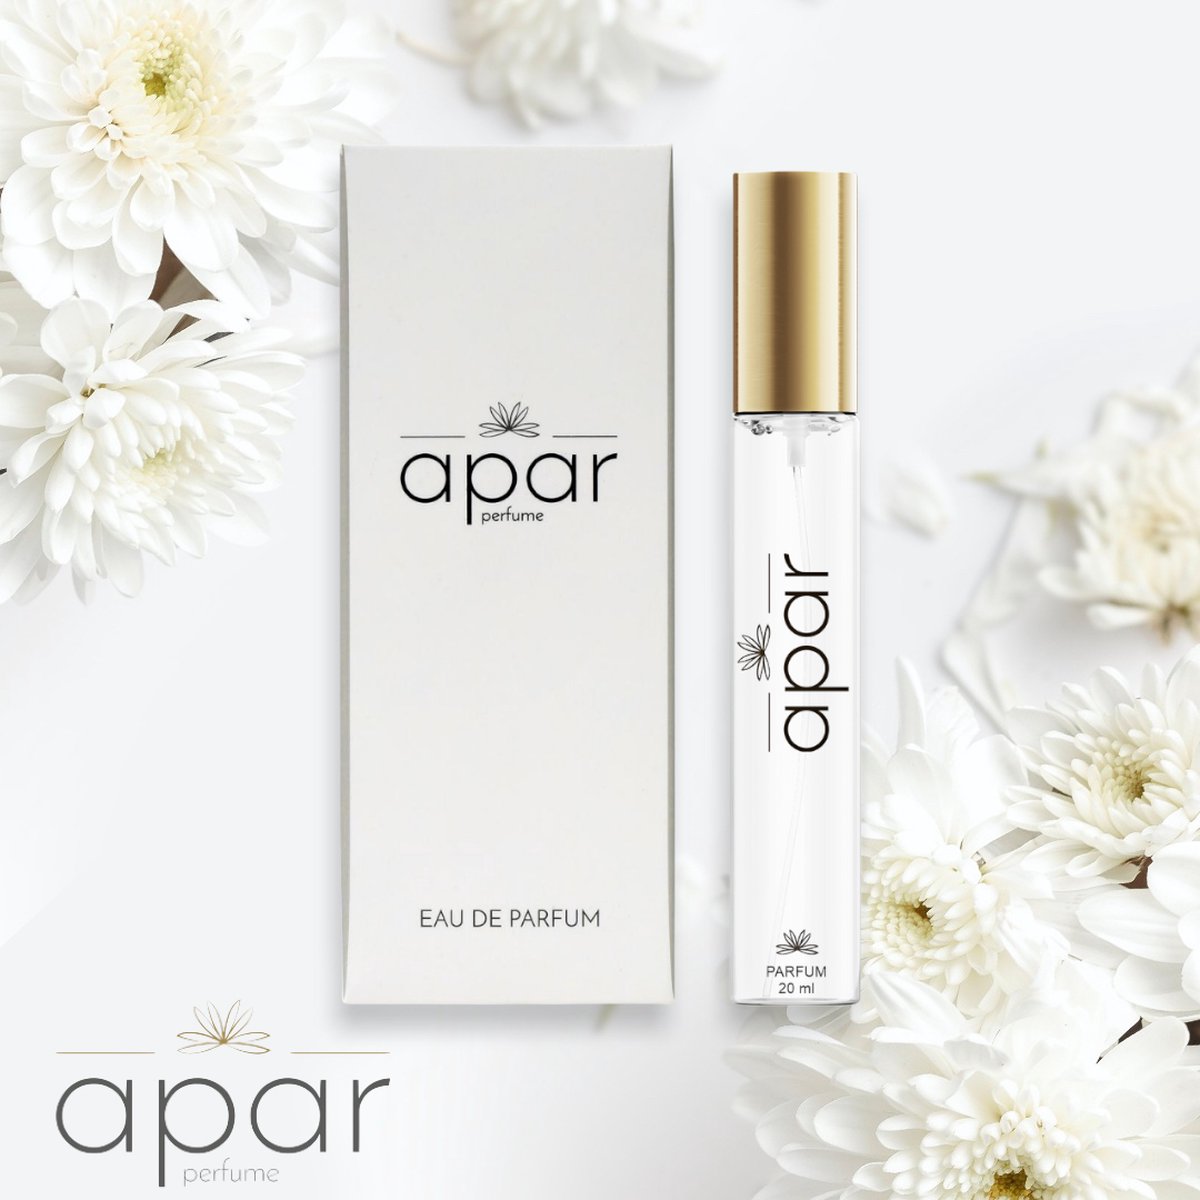 ❤Dure merk geuren voor een eerlijke prijs❤APAR Parfum EDP - 20ml - Nummer F259 Standard -